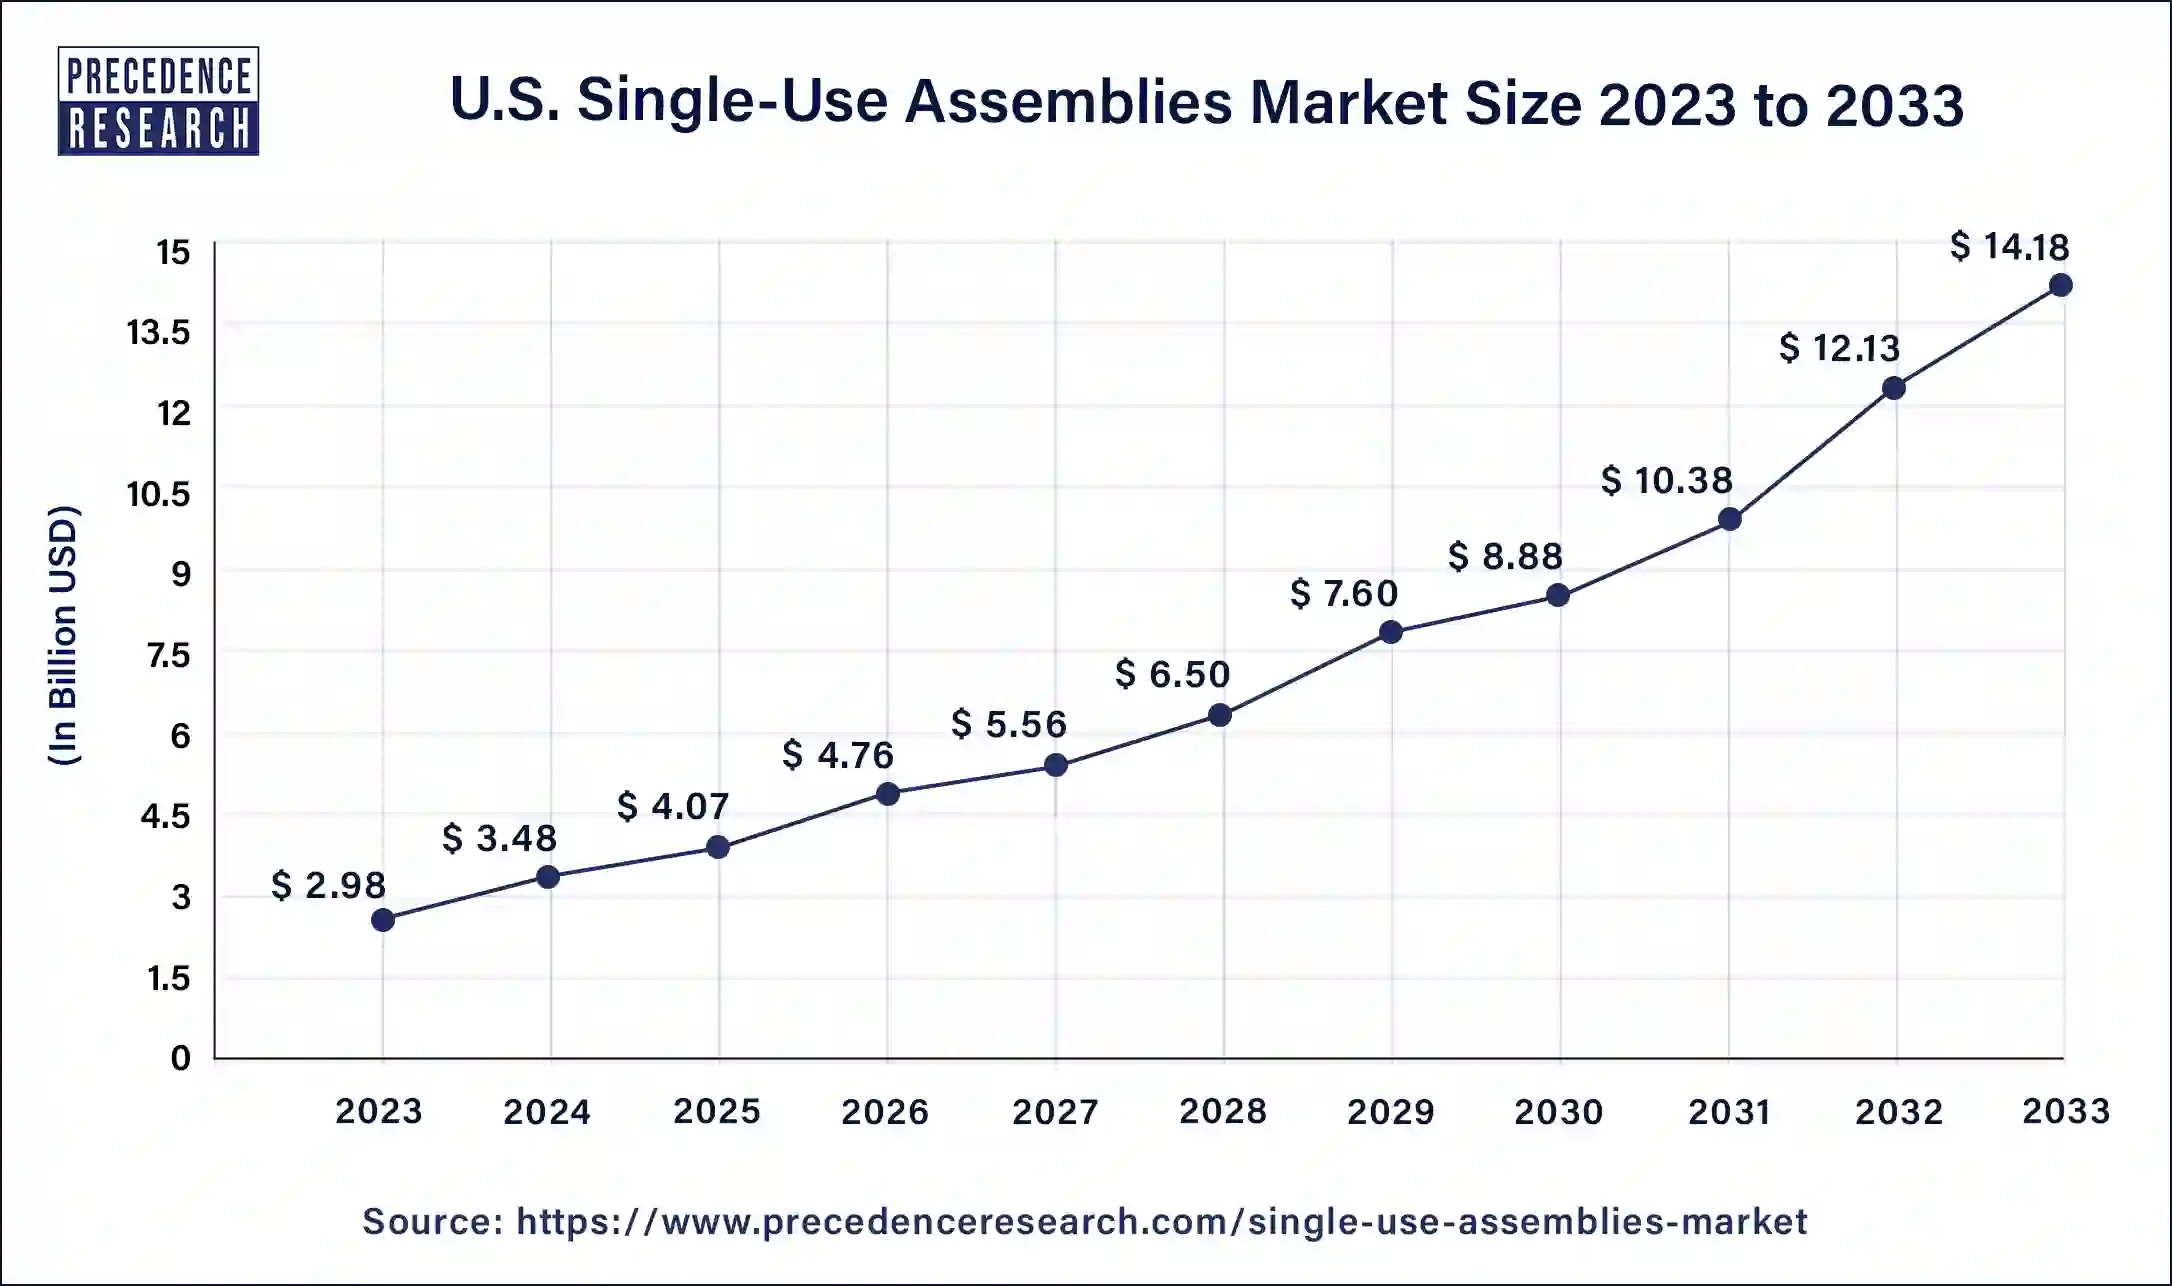 U.S. Single-Use Assemblies Market Size 2024 to 2033